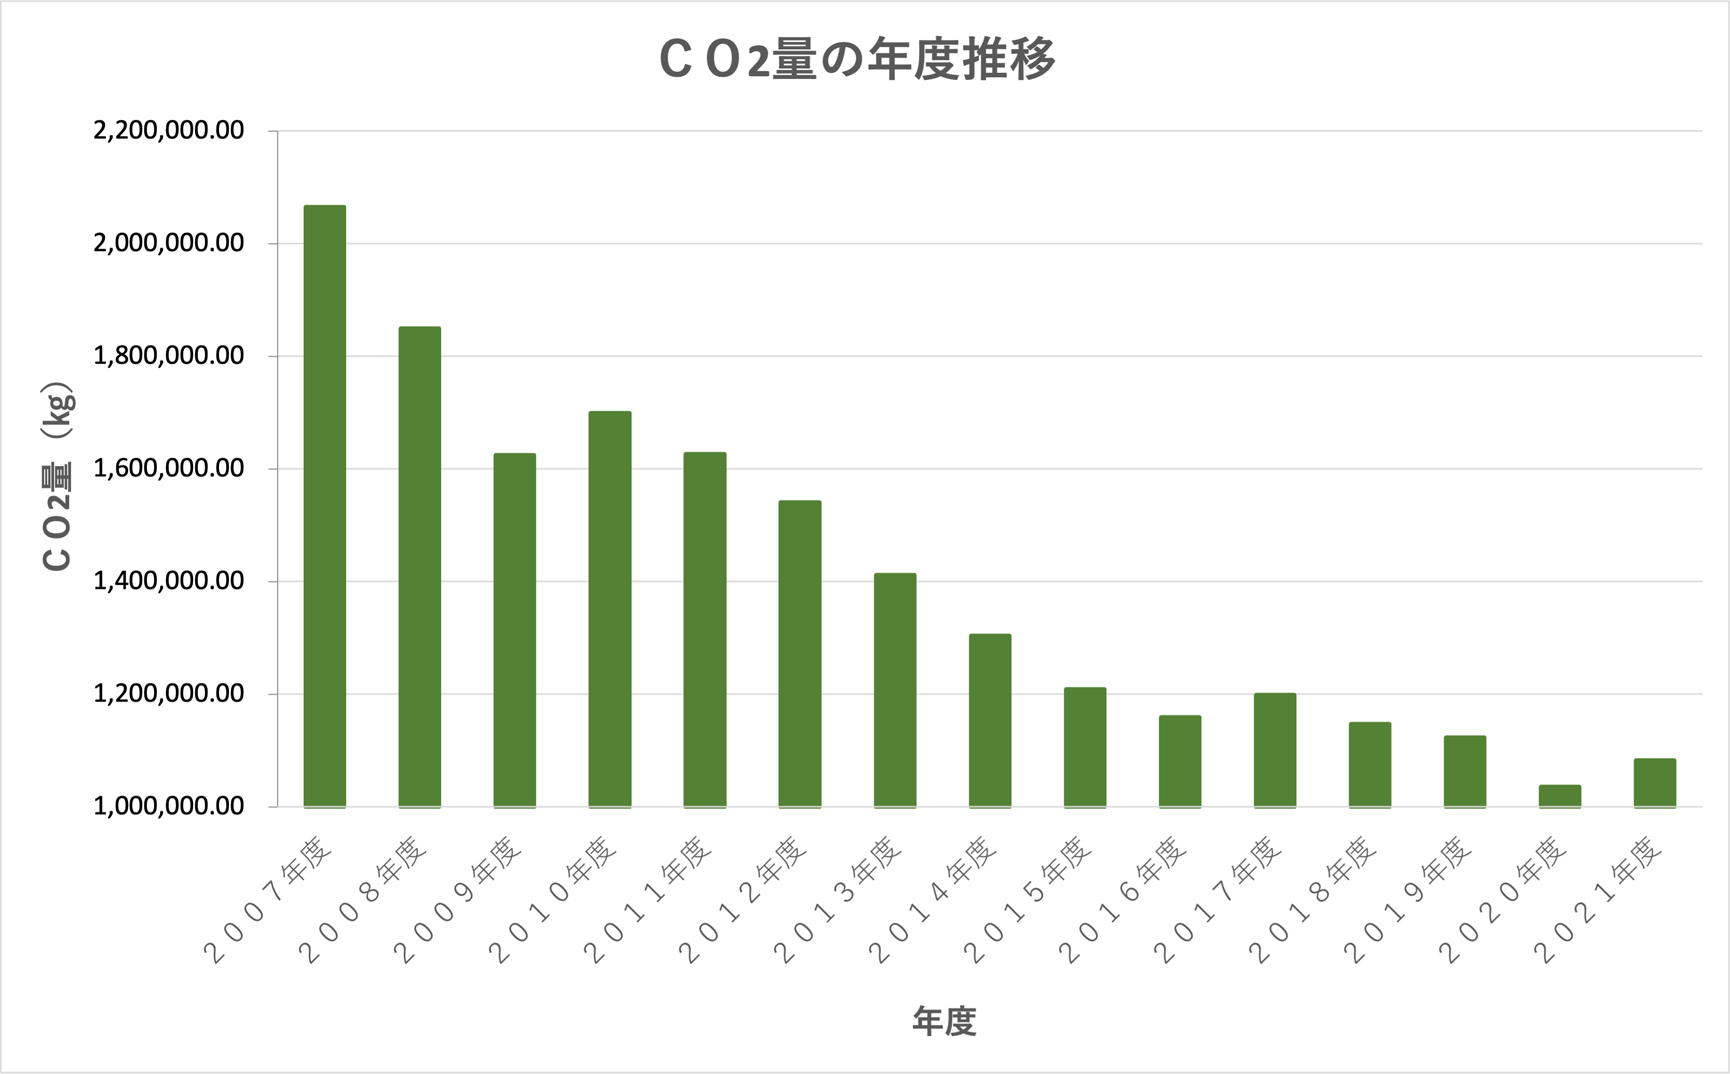 CO²量の年度推移